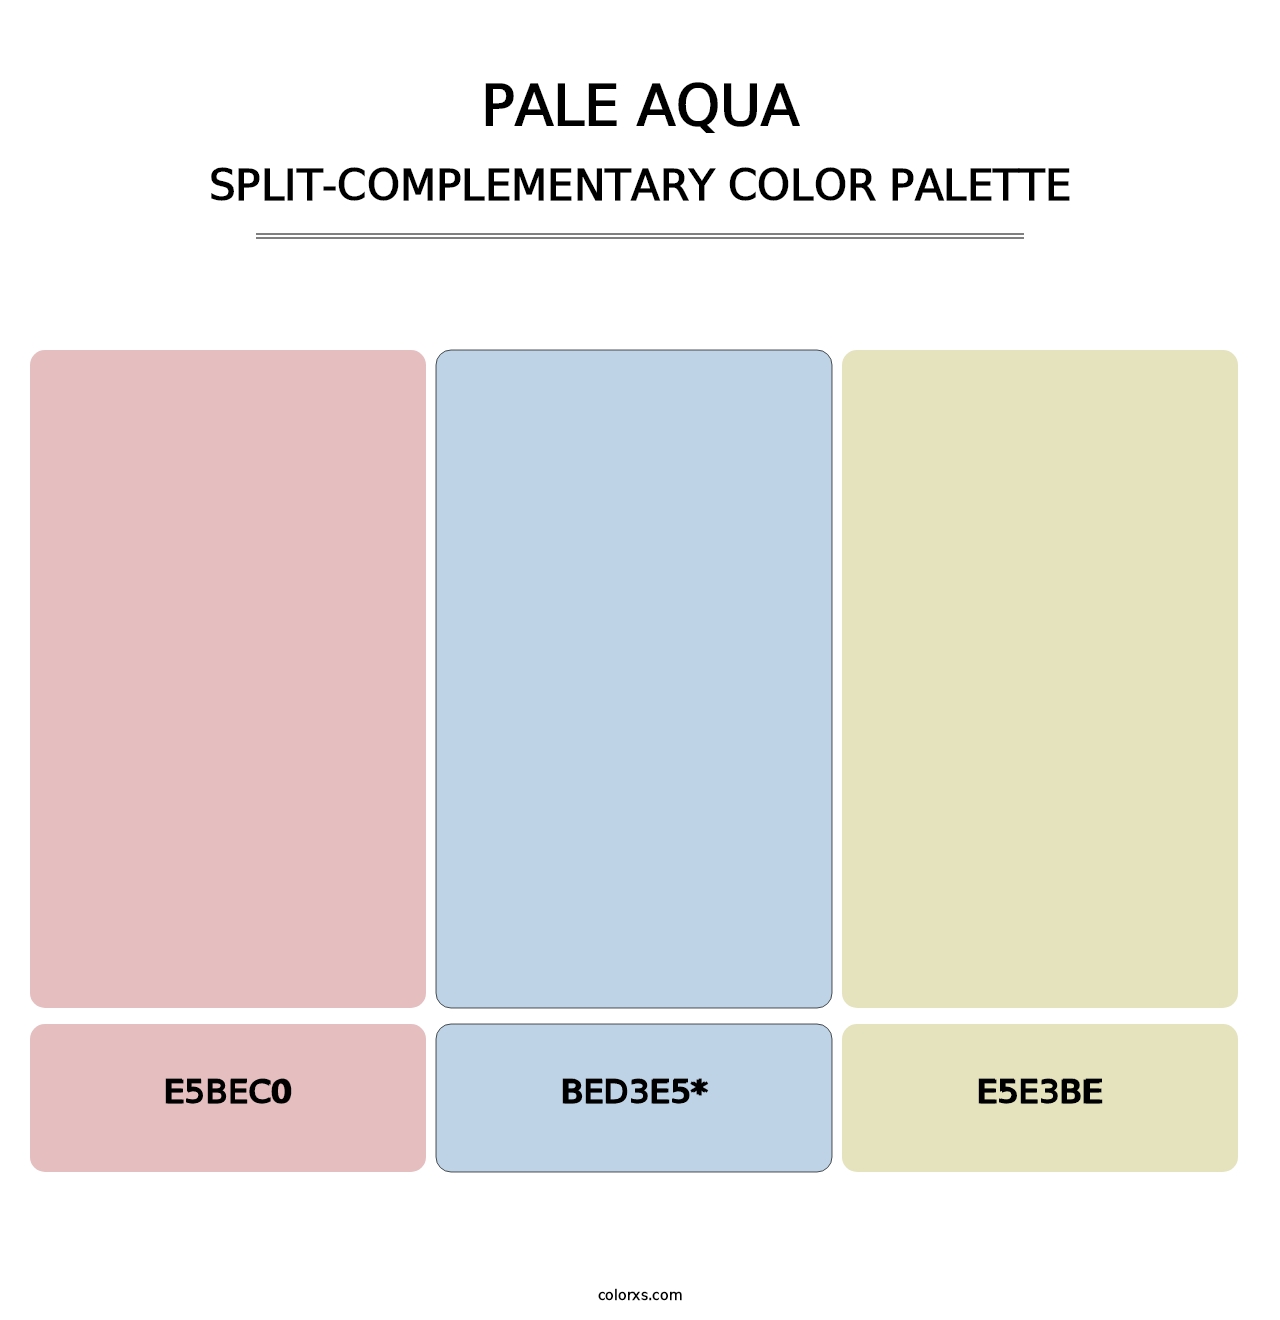 Pale Aqua - Split-Complementary Color Palette